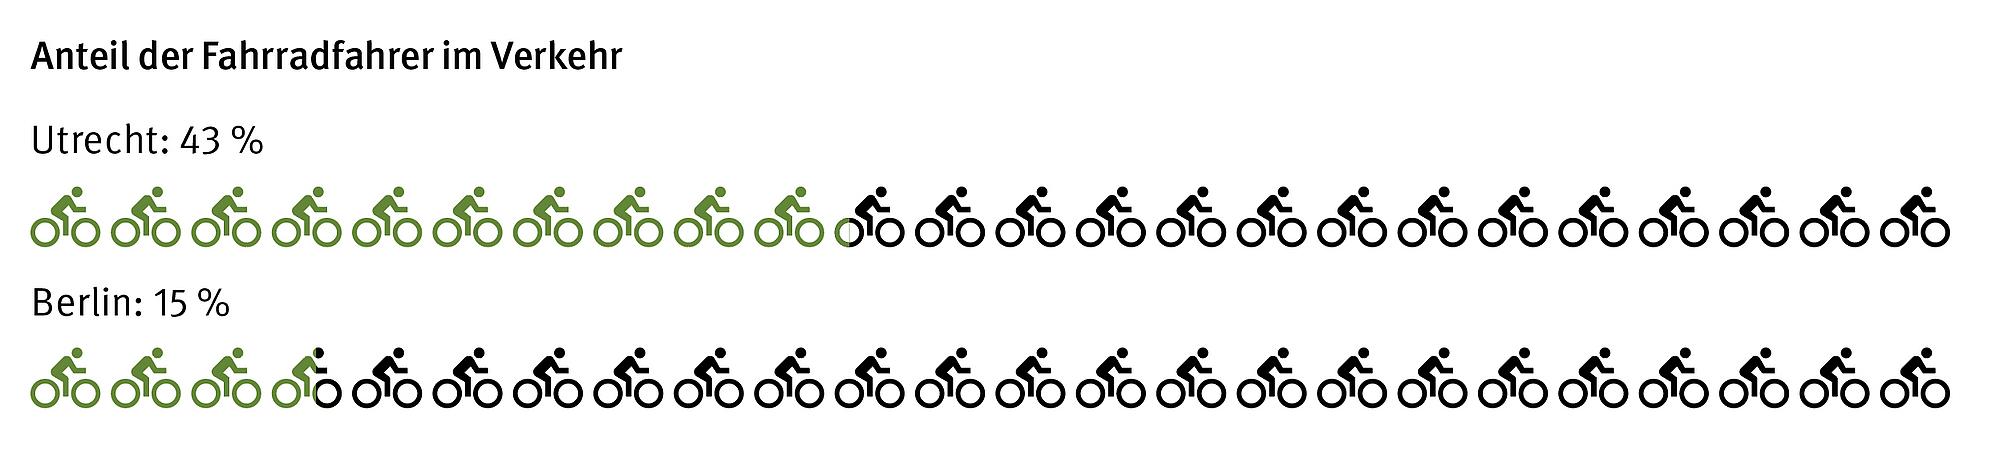 Grafik Anteil der Fahrradfahrer im Verkehr. Vergleich zwischen Utrecht und Berlin.